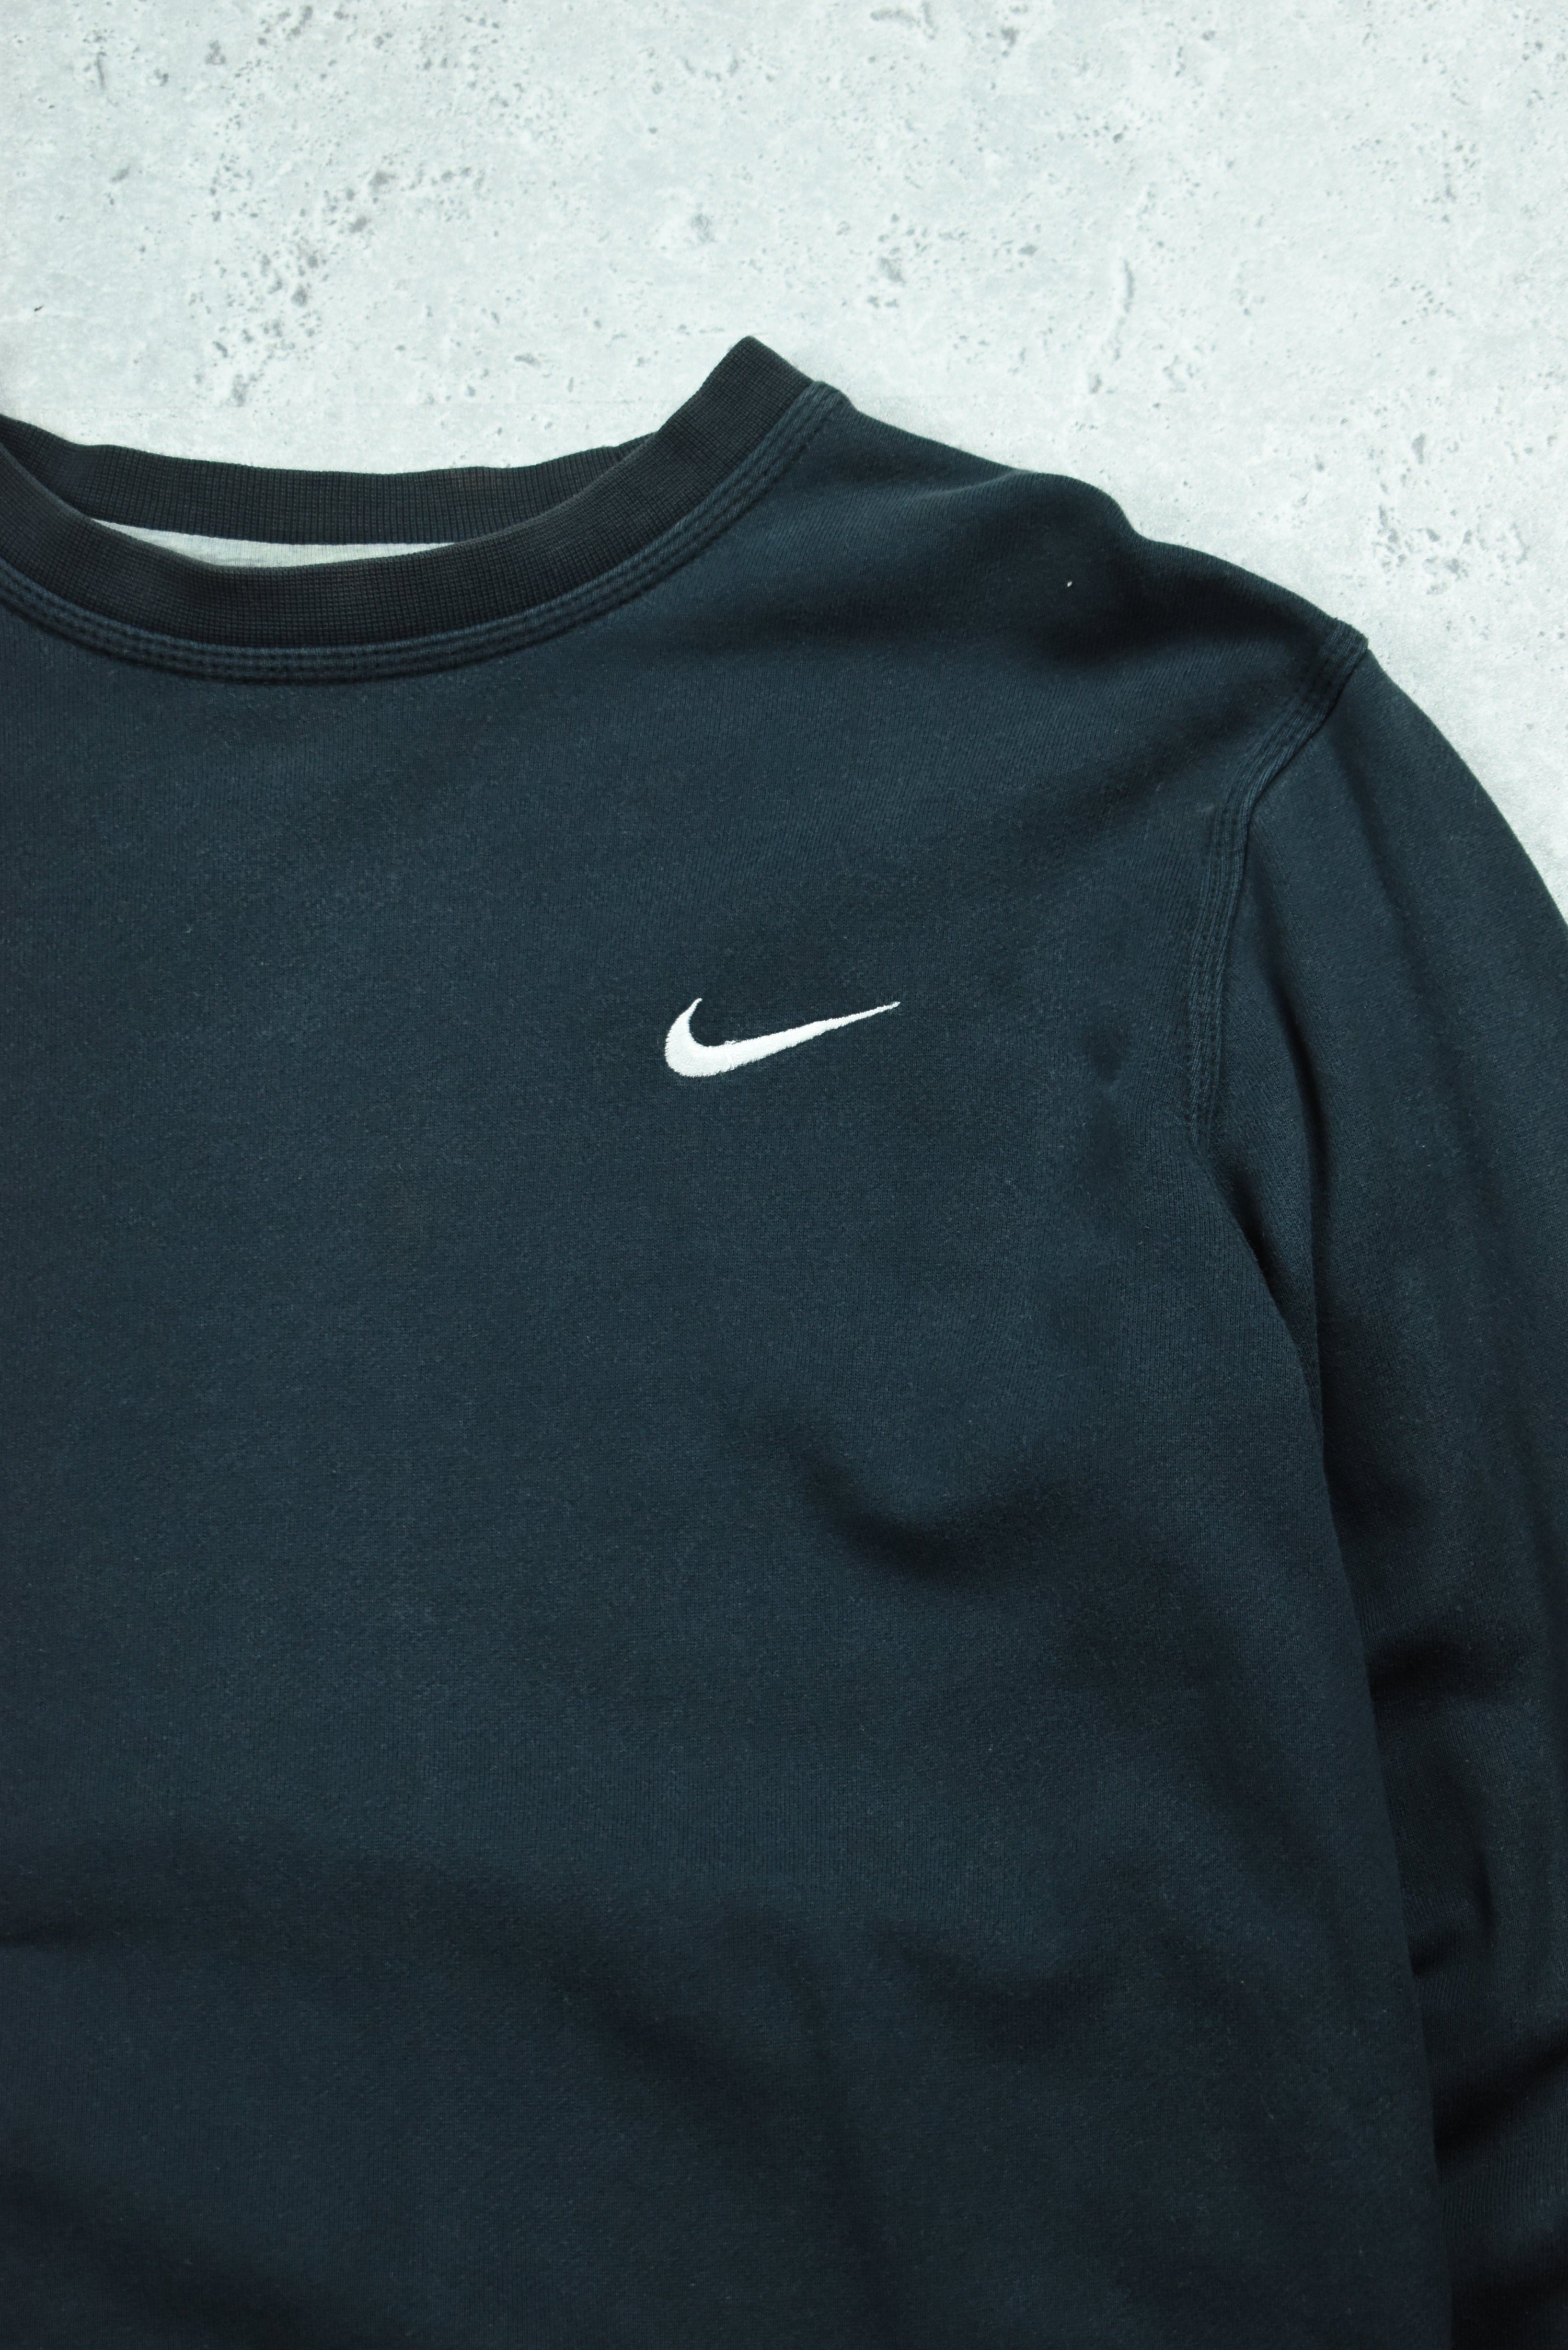 Vintage Nike Embroidery Small Swoosh Sweatshirt Medium